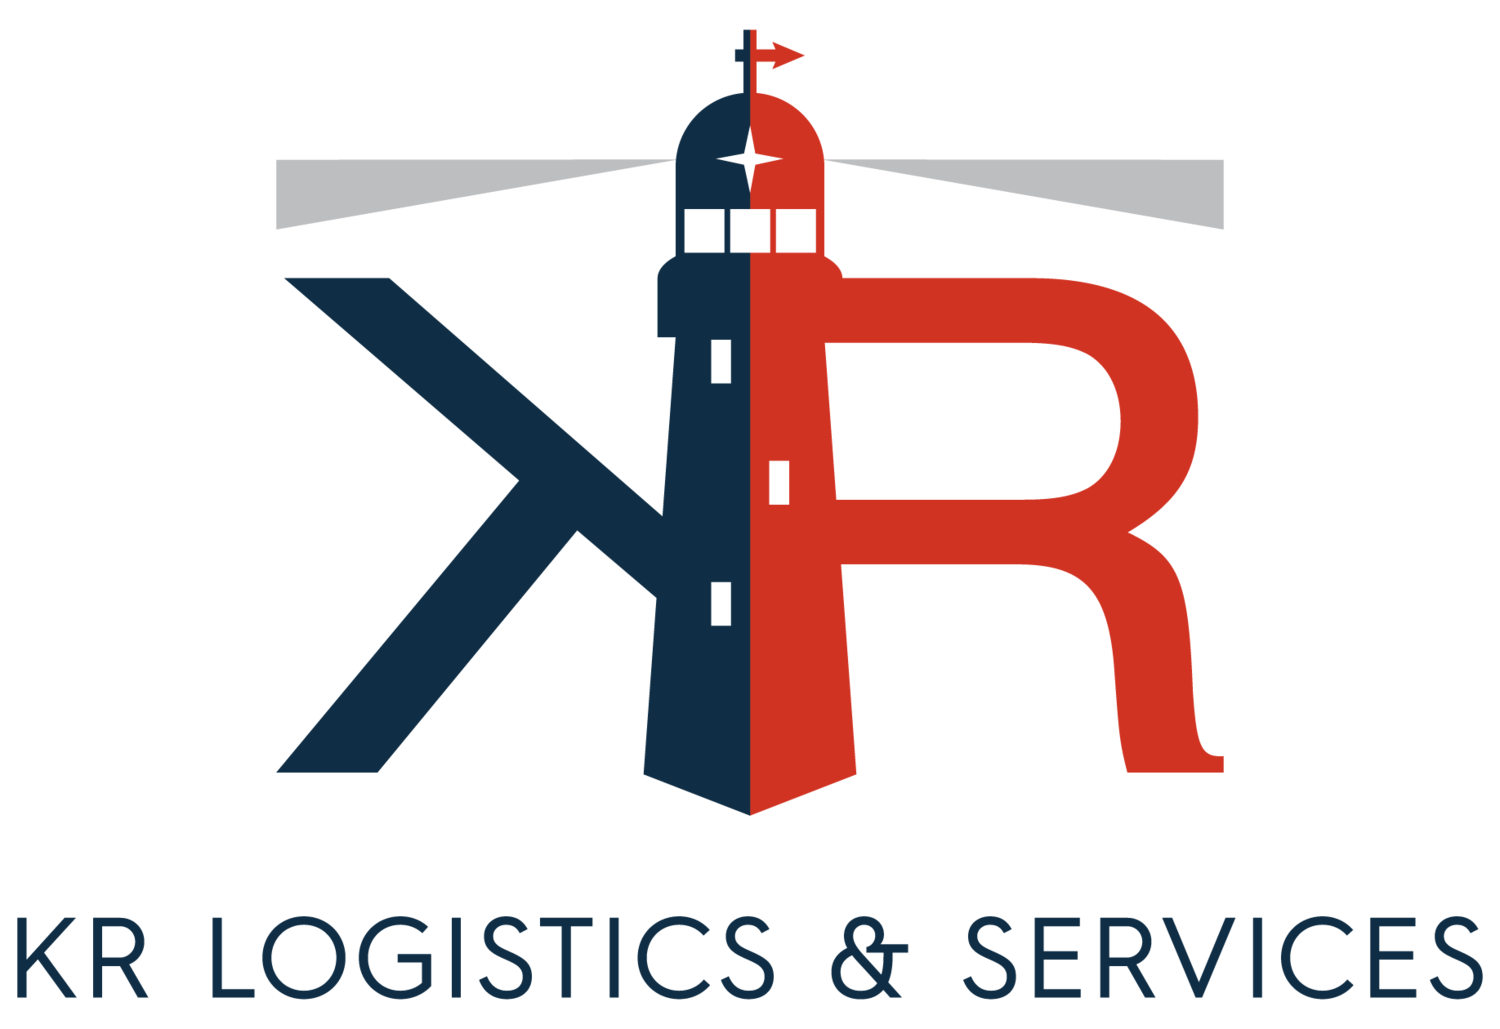 KR Logistics & Services